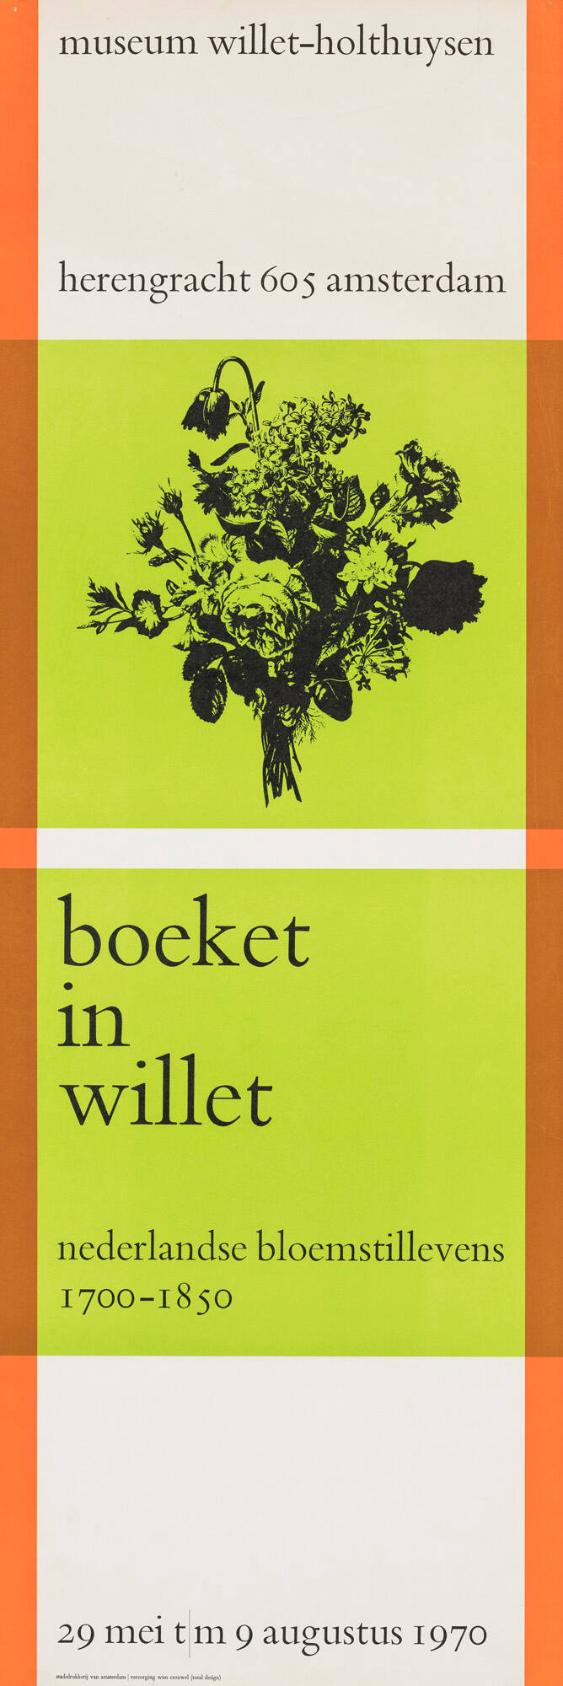 Boeket in Willet - Nederlandse bloemstillevens 1700-1850 - Museum Willet-Holthuysen